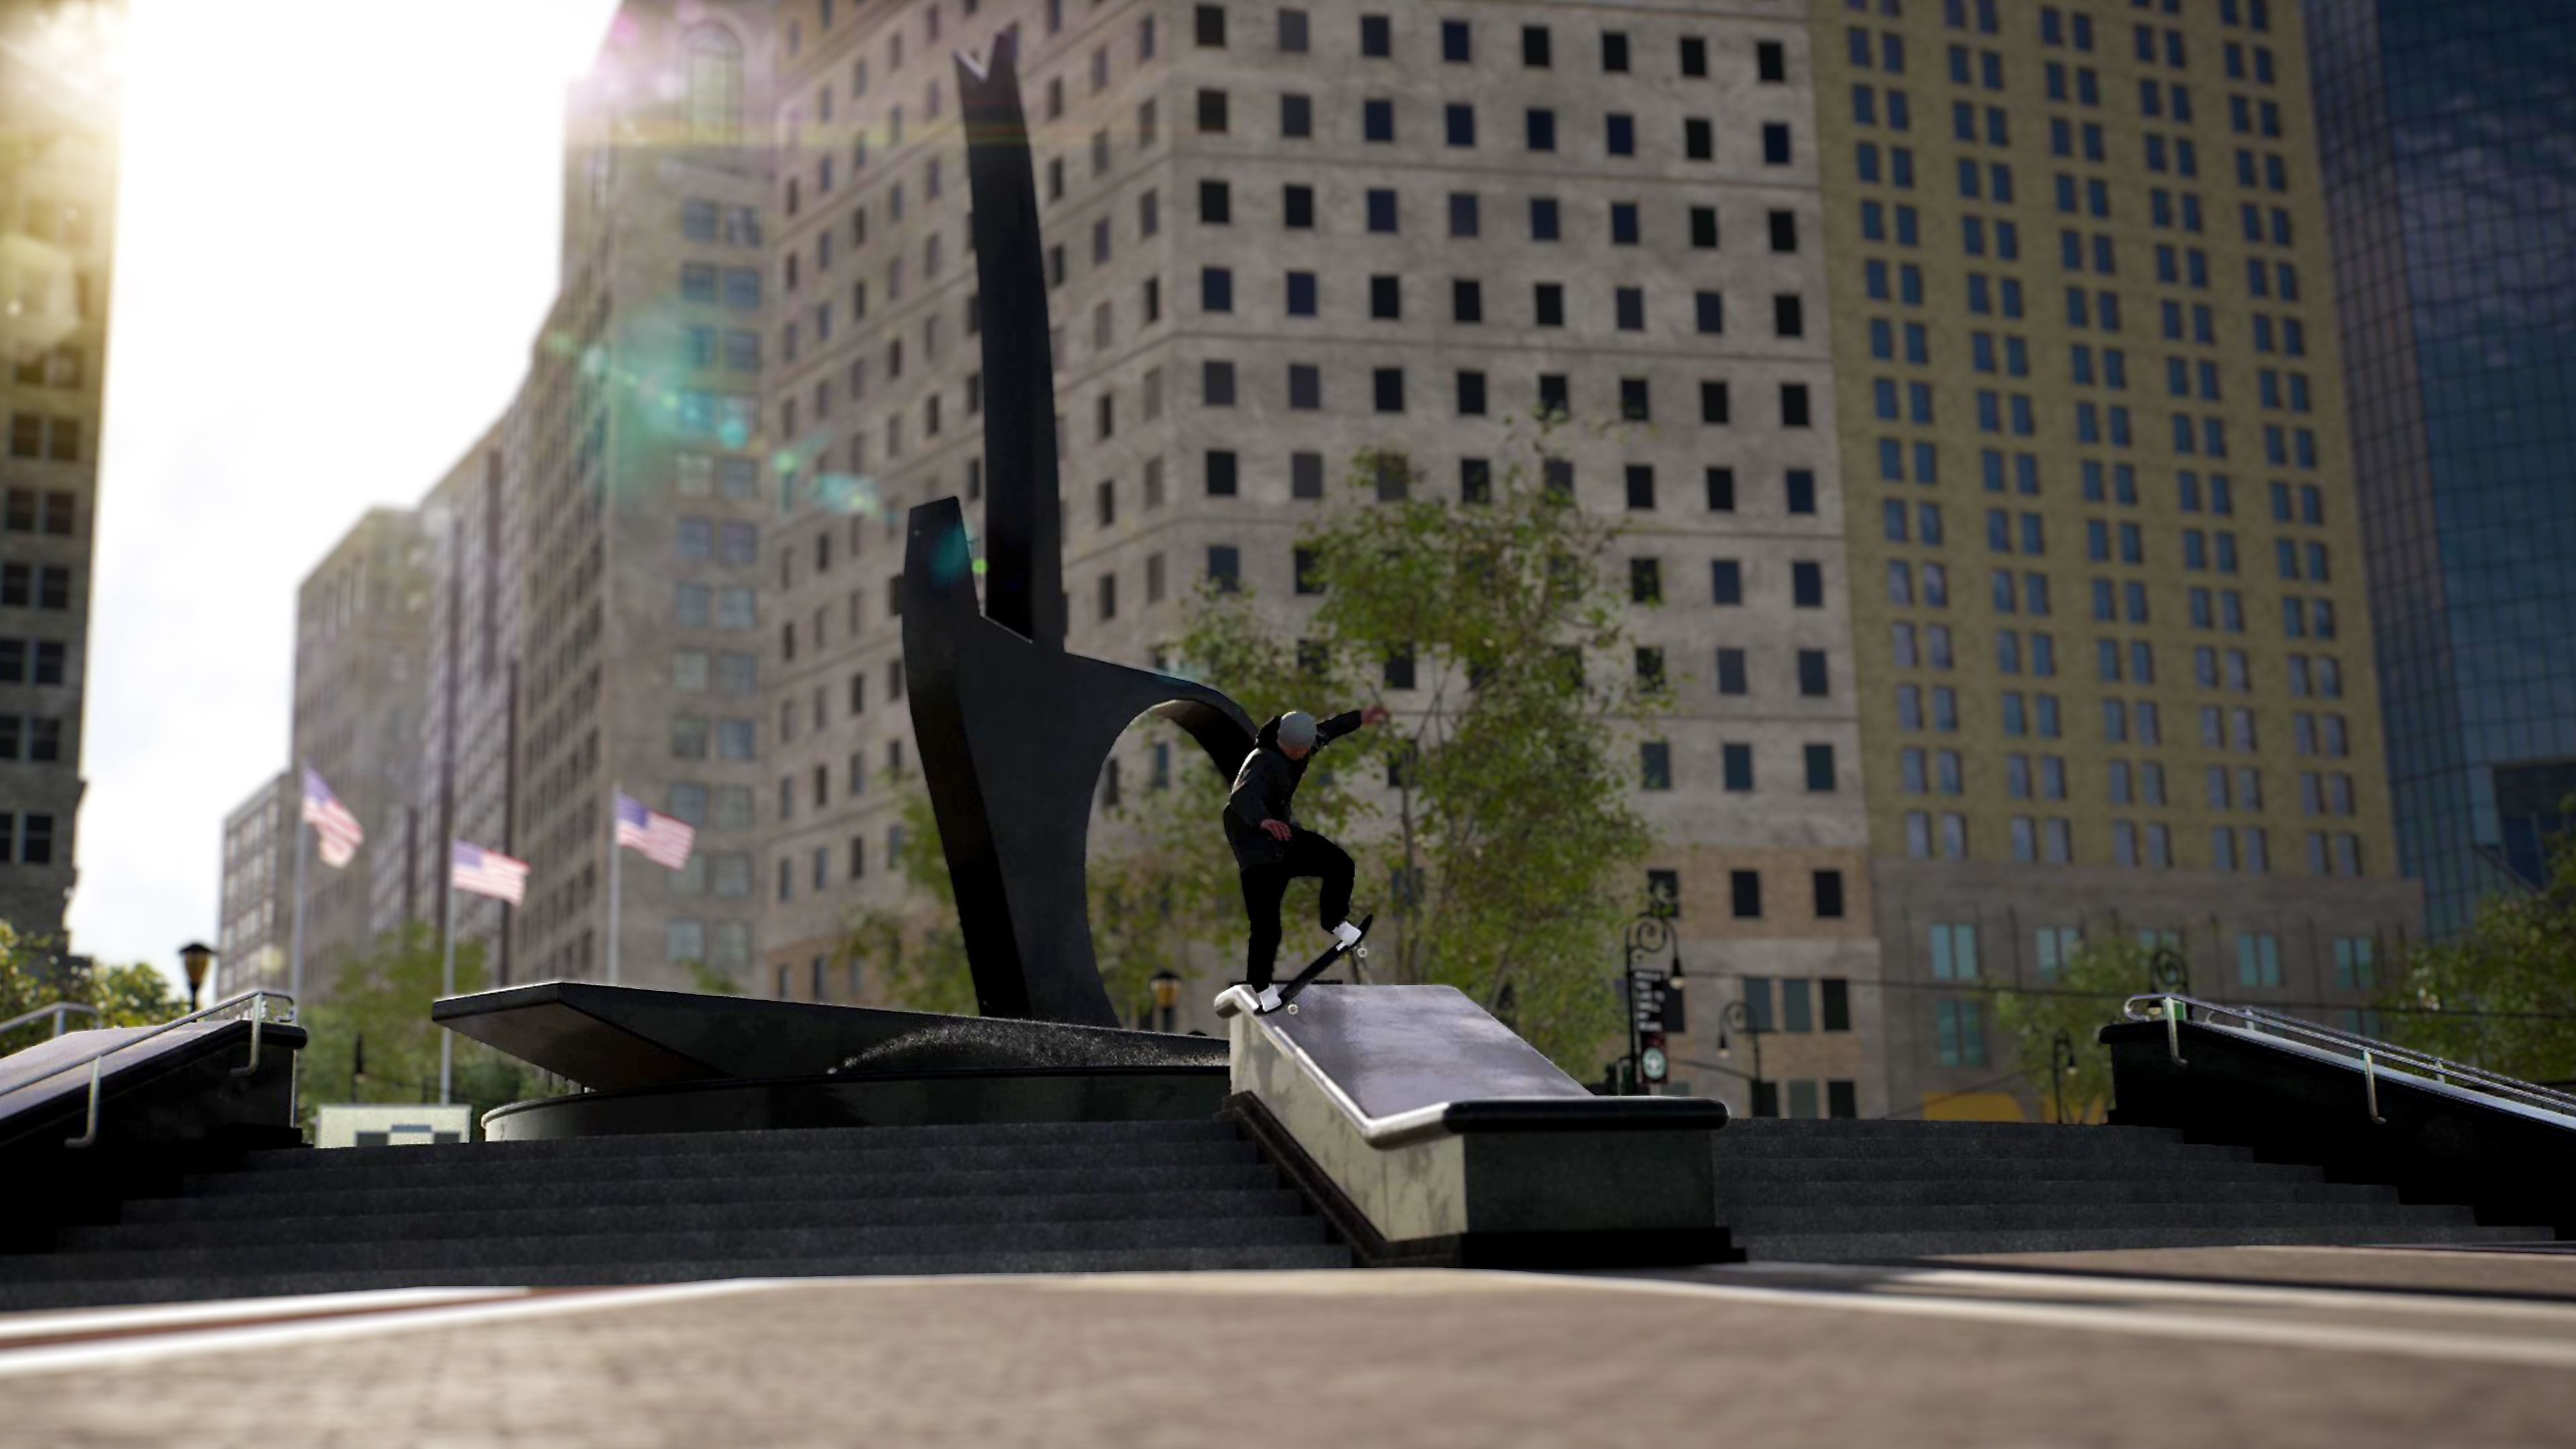 Captura de pantalla de Session: Skate Sim que muestra un skater raspando un borde en una plaza de ciudad